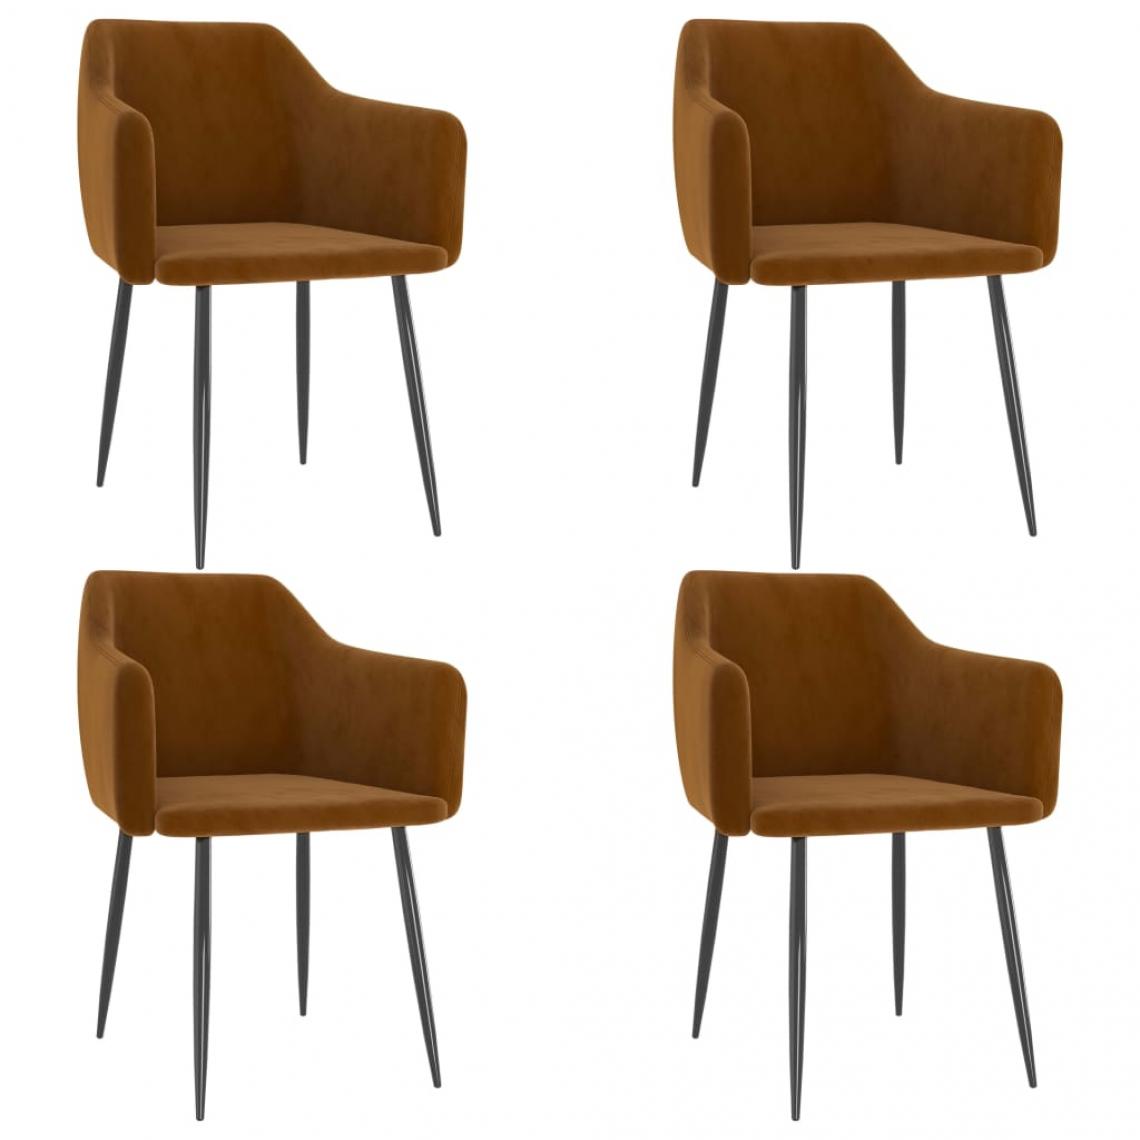 Decoshop26 - Lot de 4 chaises de salle à manger cuisine design moderne velours marron CDS021769 - Chaises